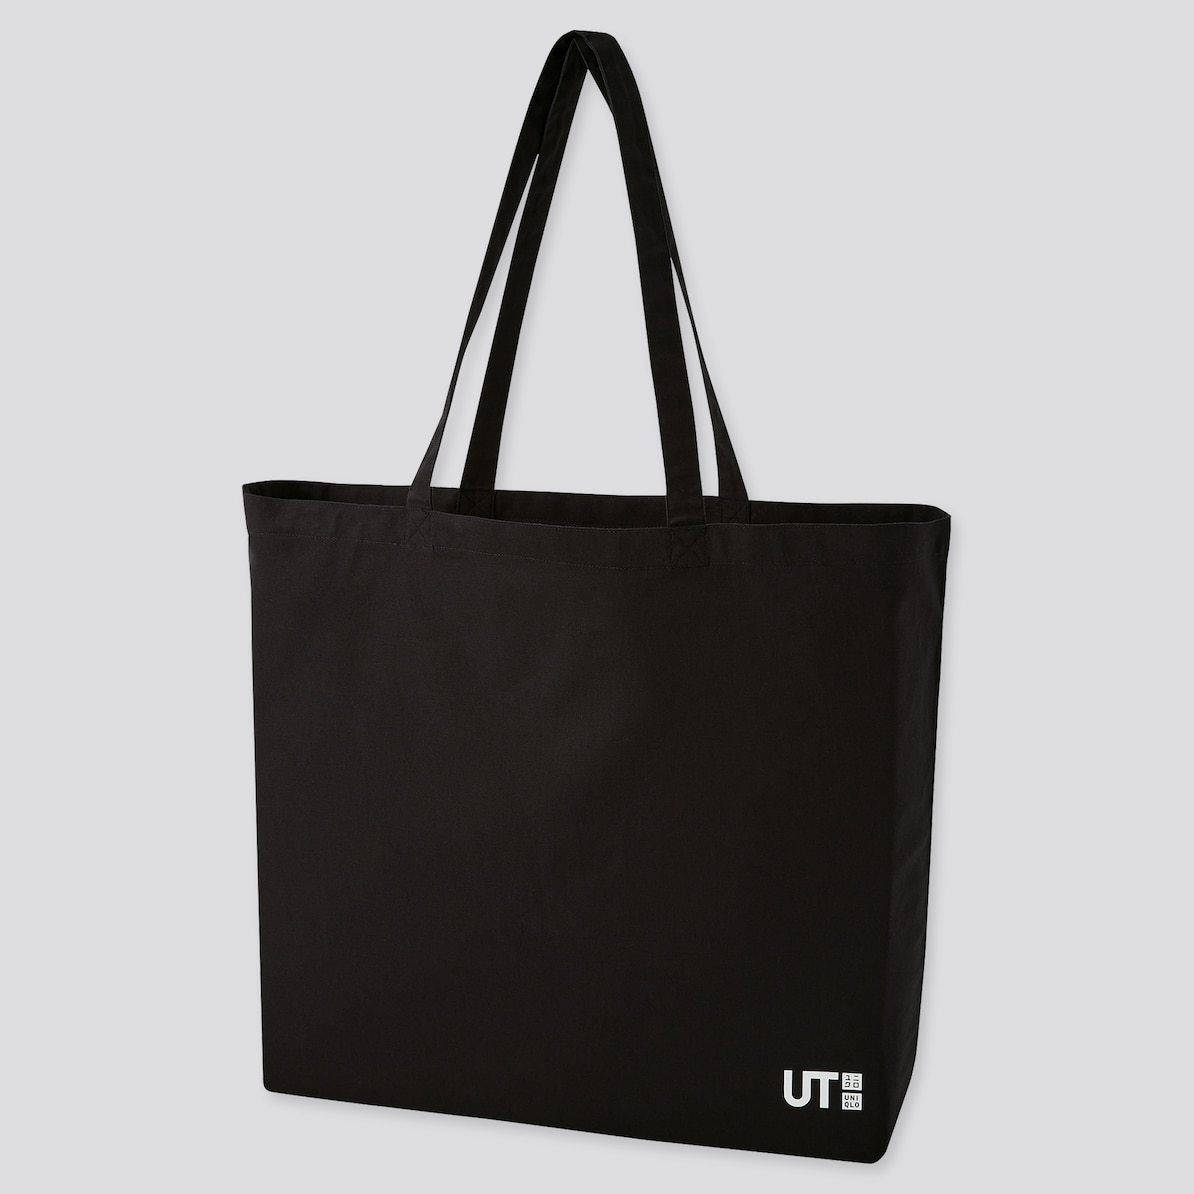 UNIQLO( Uniqlo ) - Jean = Michel * автобус Kia eko friend Lee принт сумка (L) эко-сумка большая сумка ( не использовался популярный полная распродажа товар )